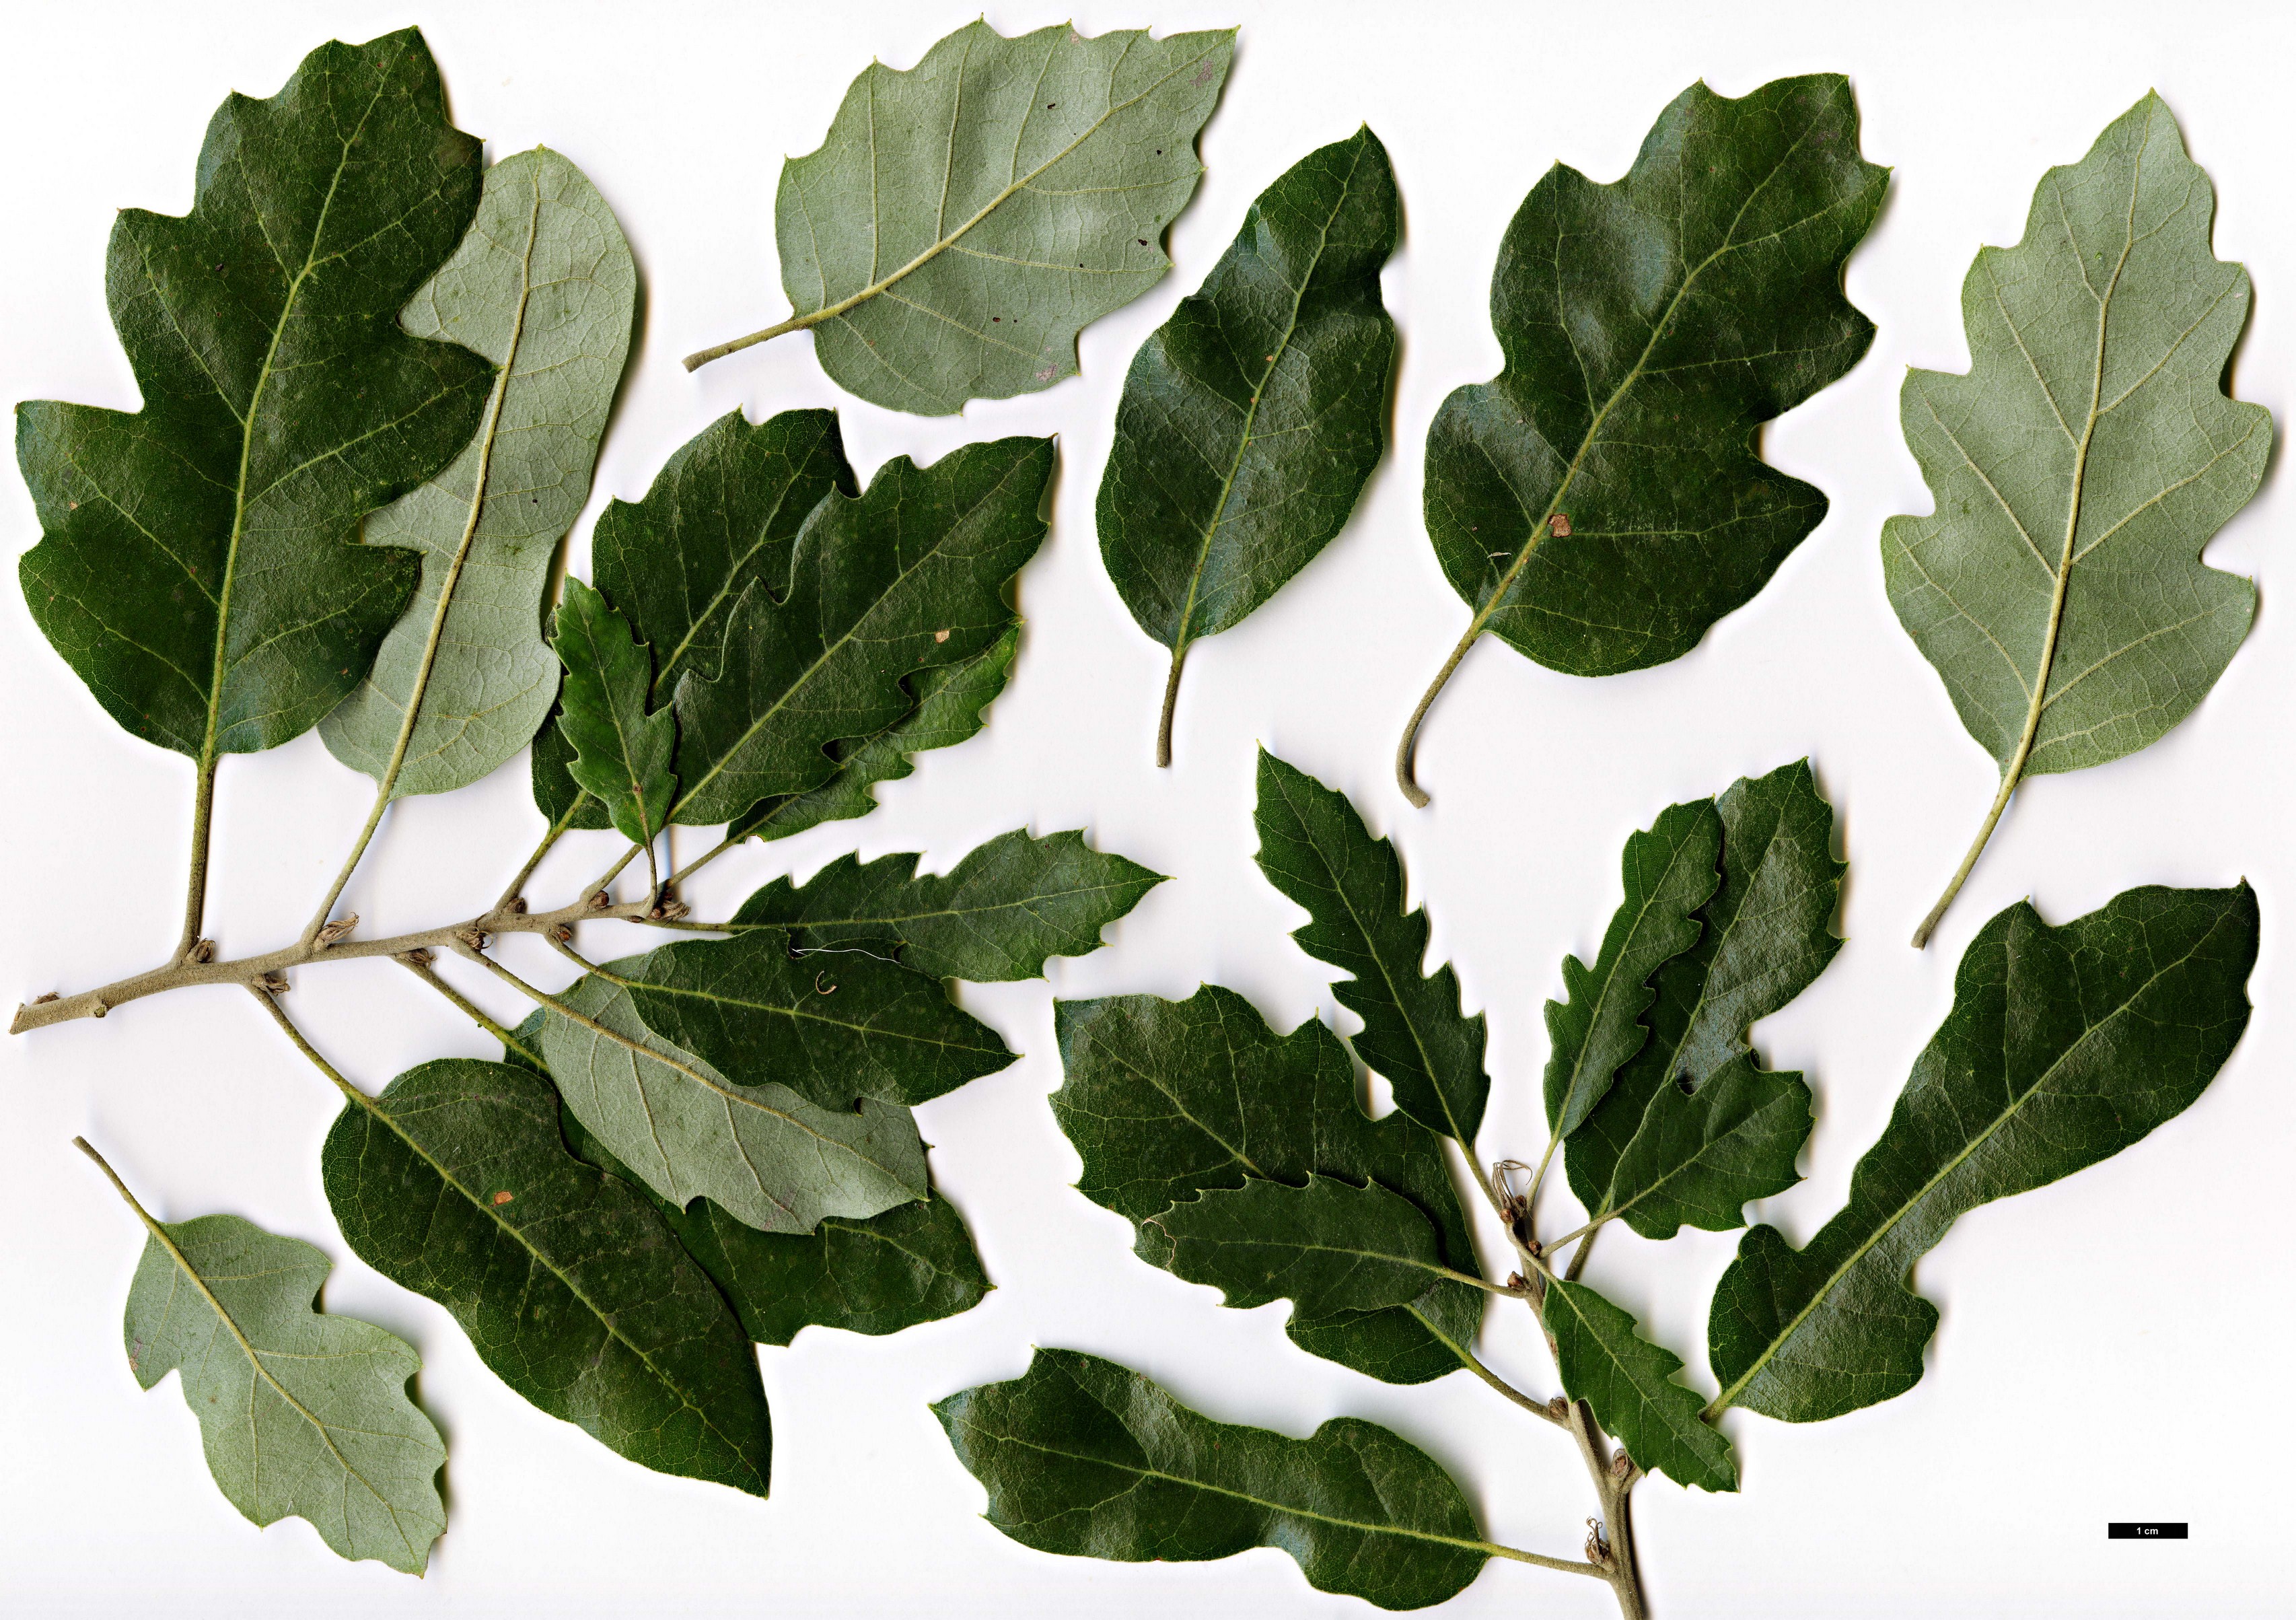 High resolution image: Family: Fagaceae - Genus: Quercus - Taxon: ×crenata - SpeciesSub: 'Heterophylla' (Q.cerris × Q.suber)